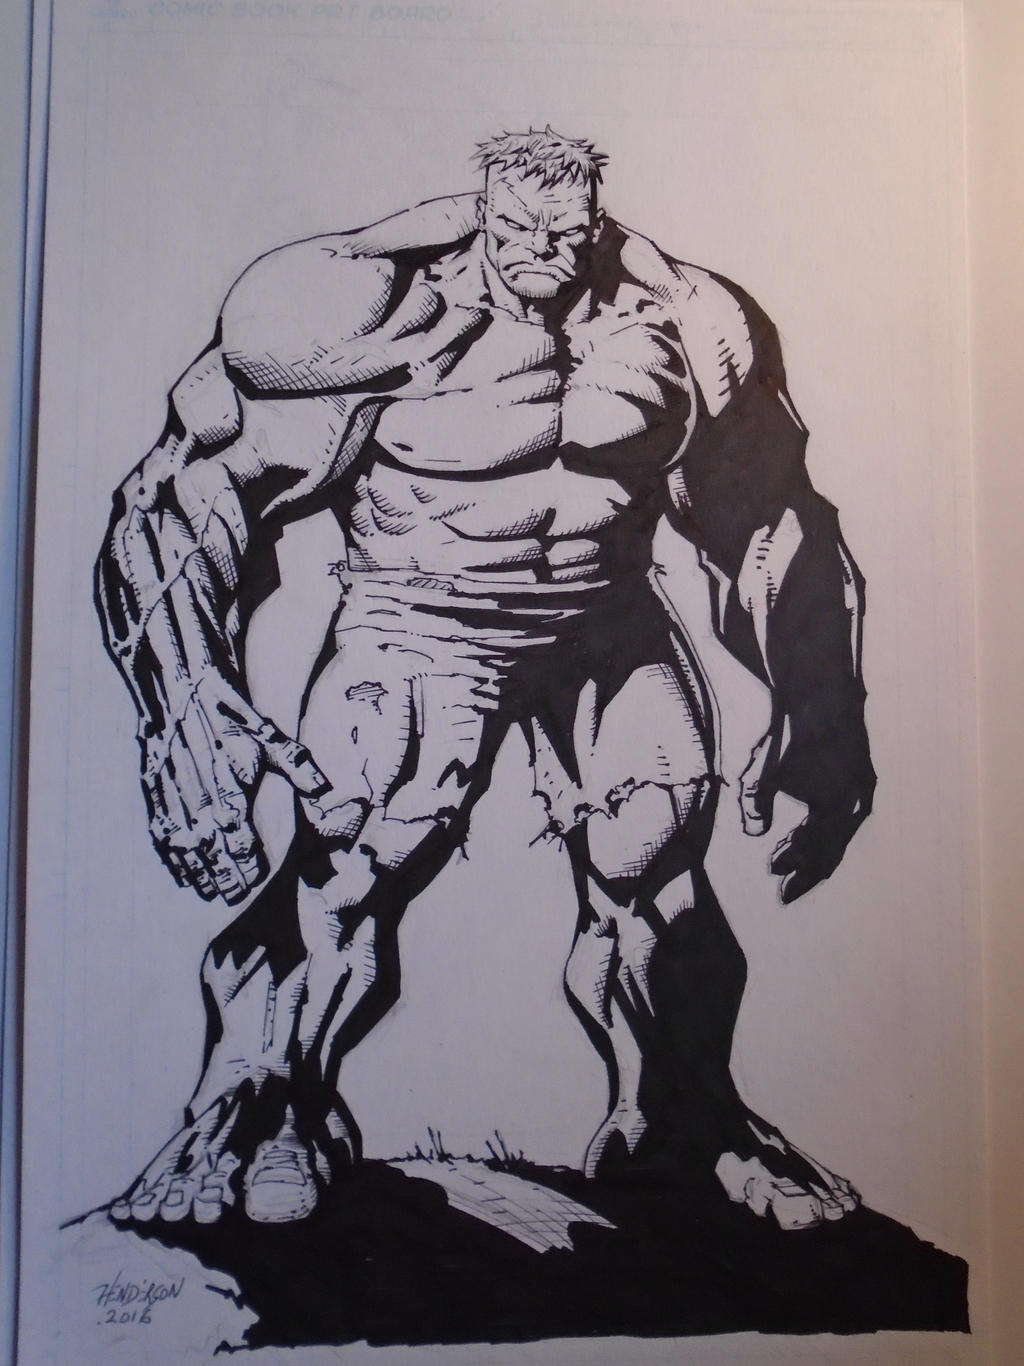 The Hulk inked